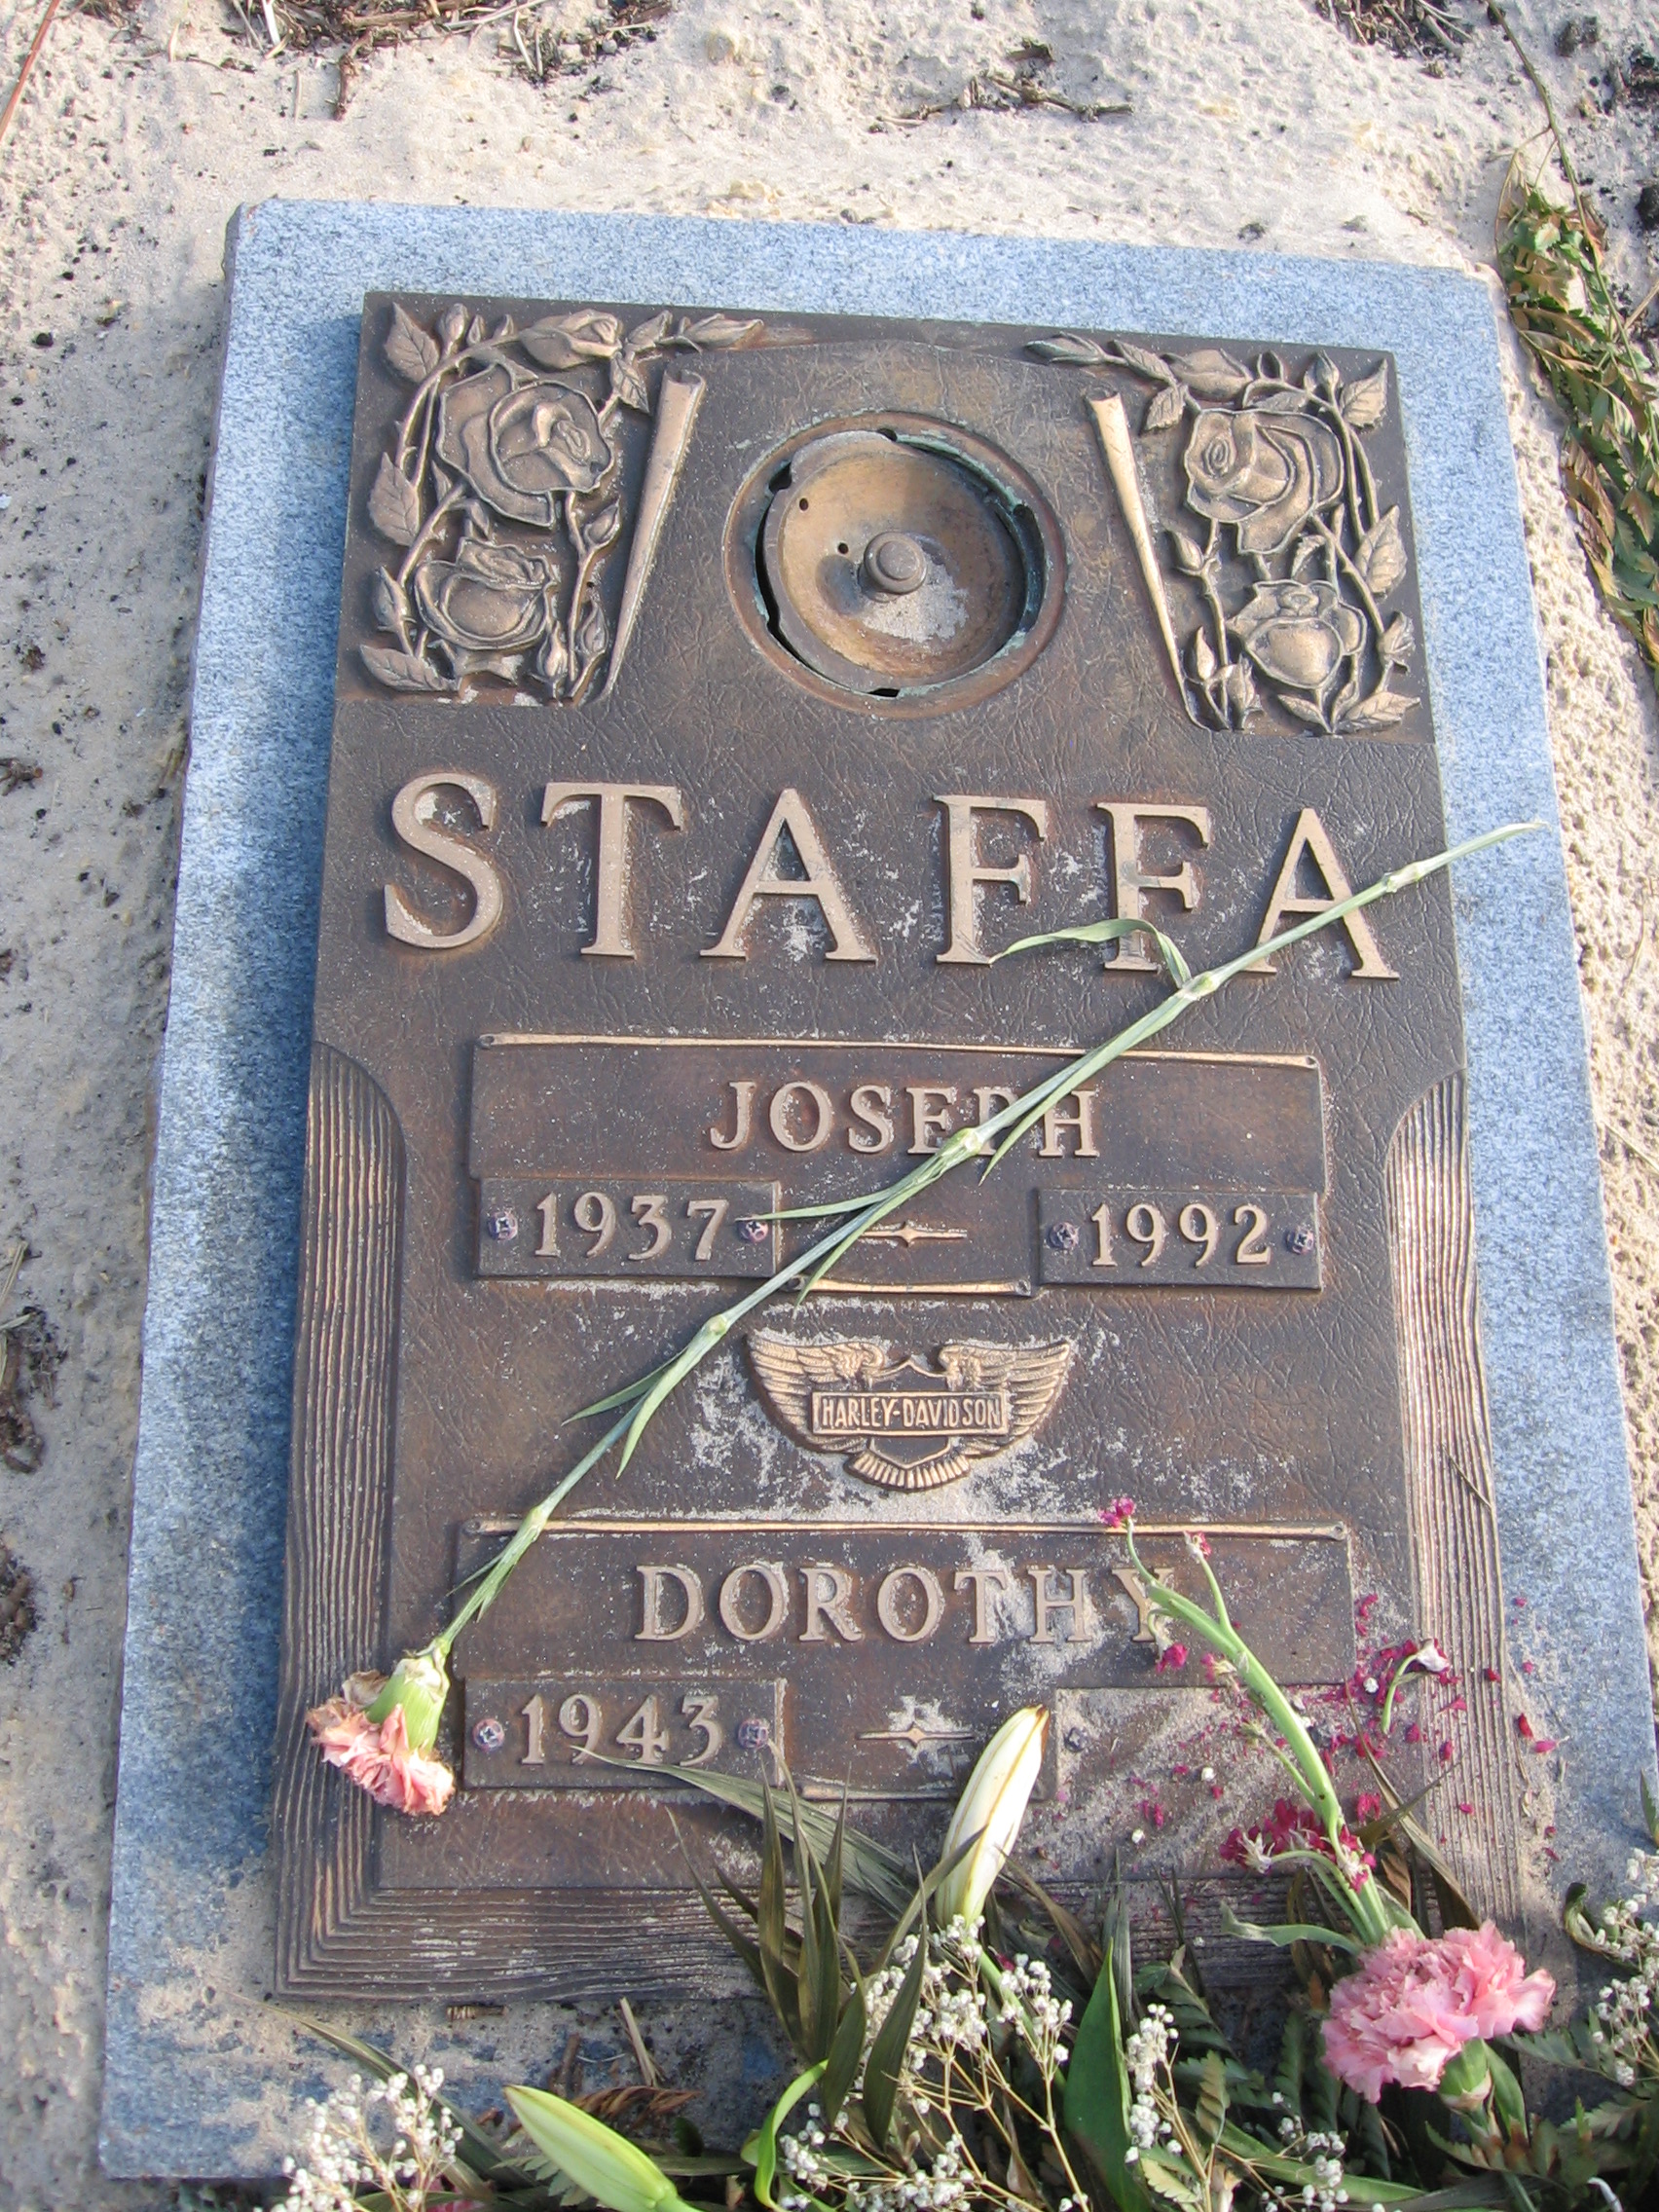 Joseph Staffa